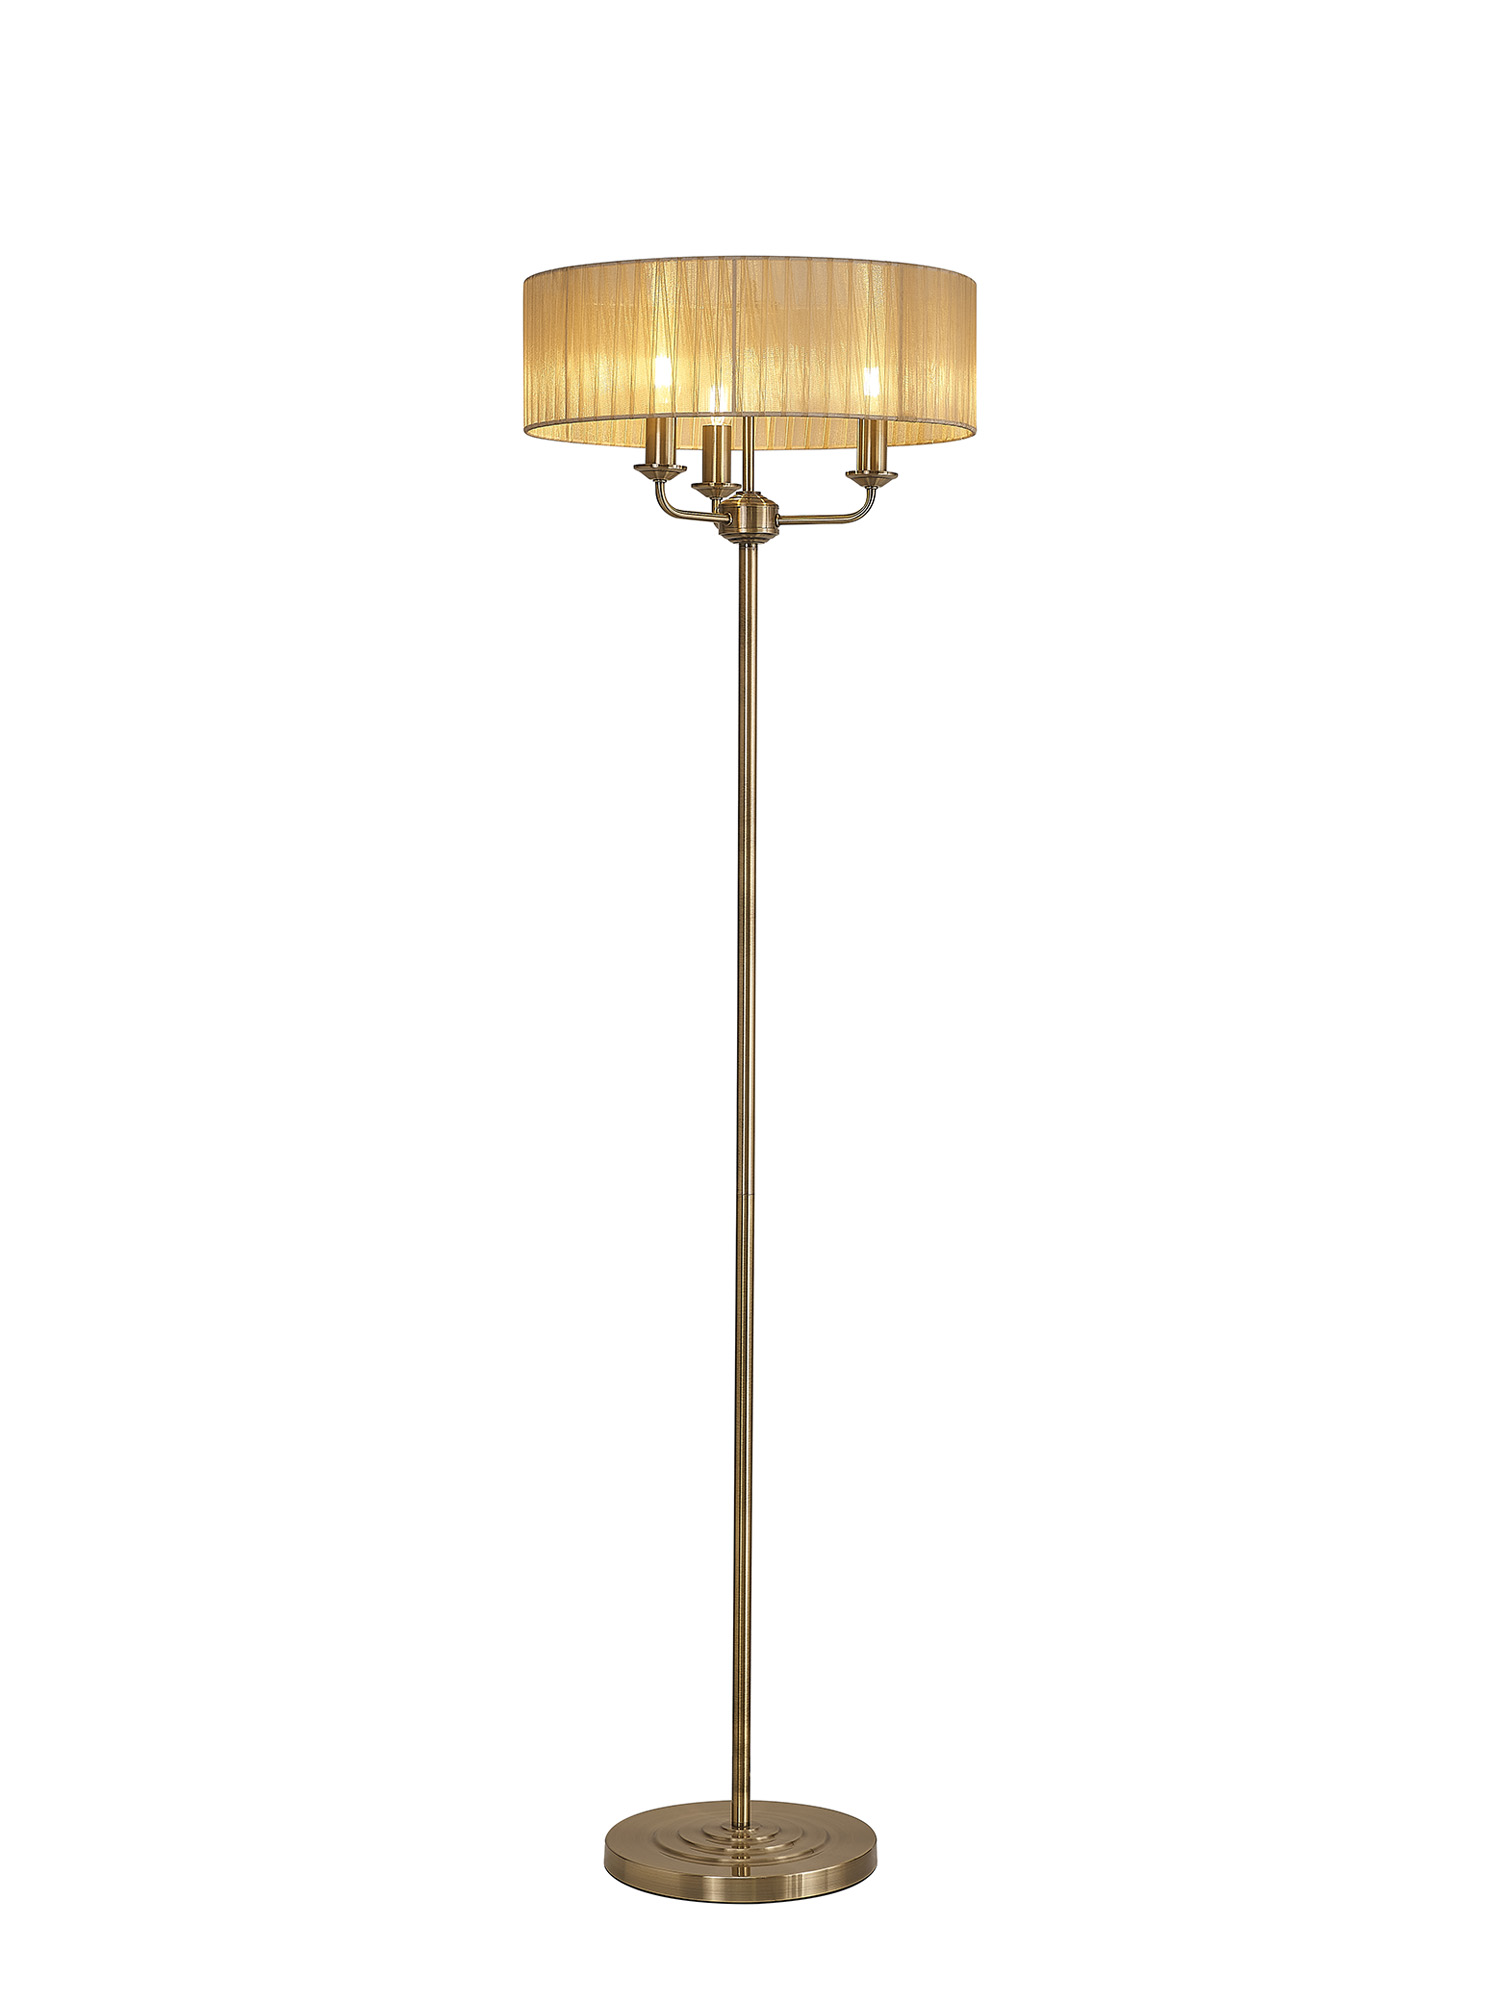 DK0909  Banyan 45cm 3 Light Floor Lamp Antique Brass, Soft Bronze